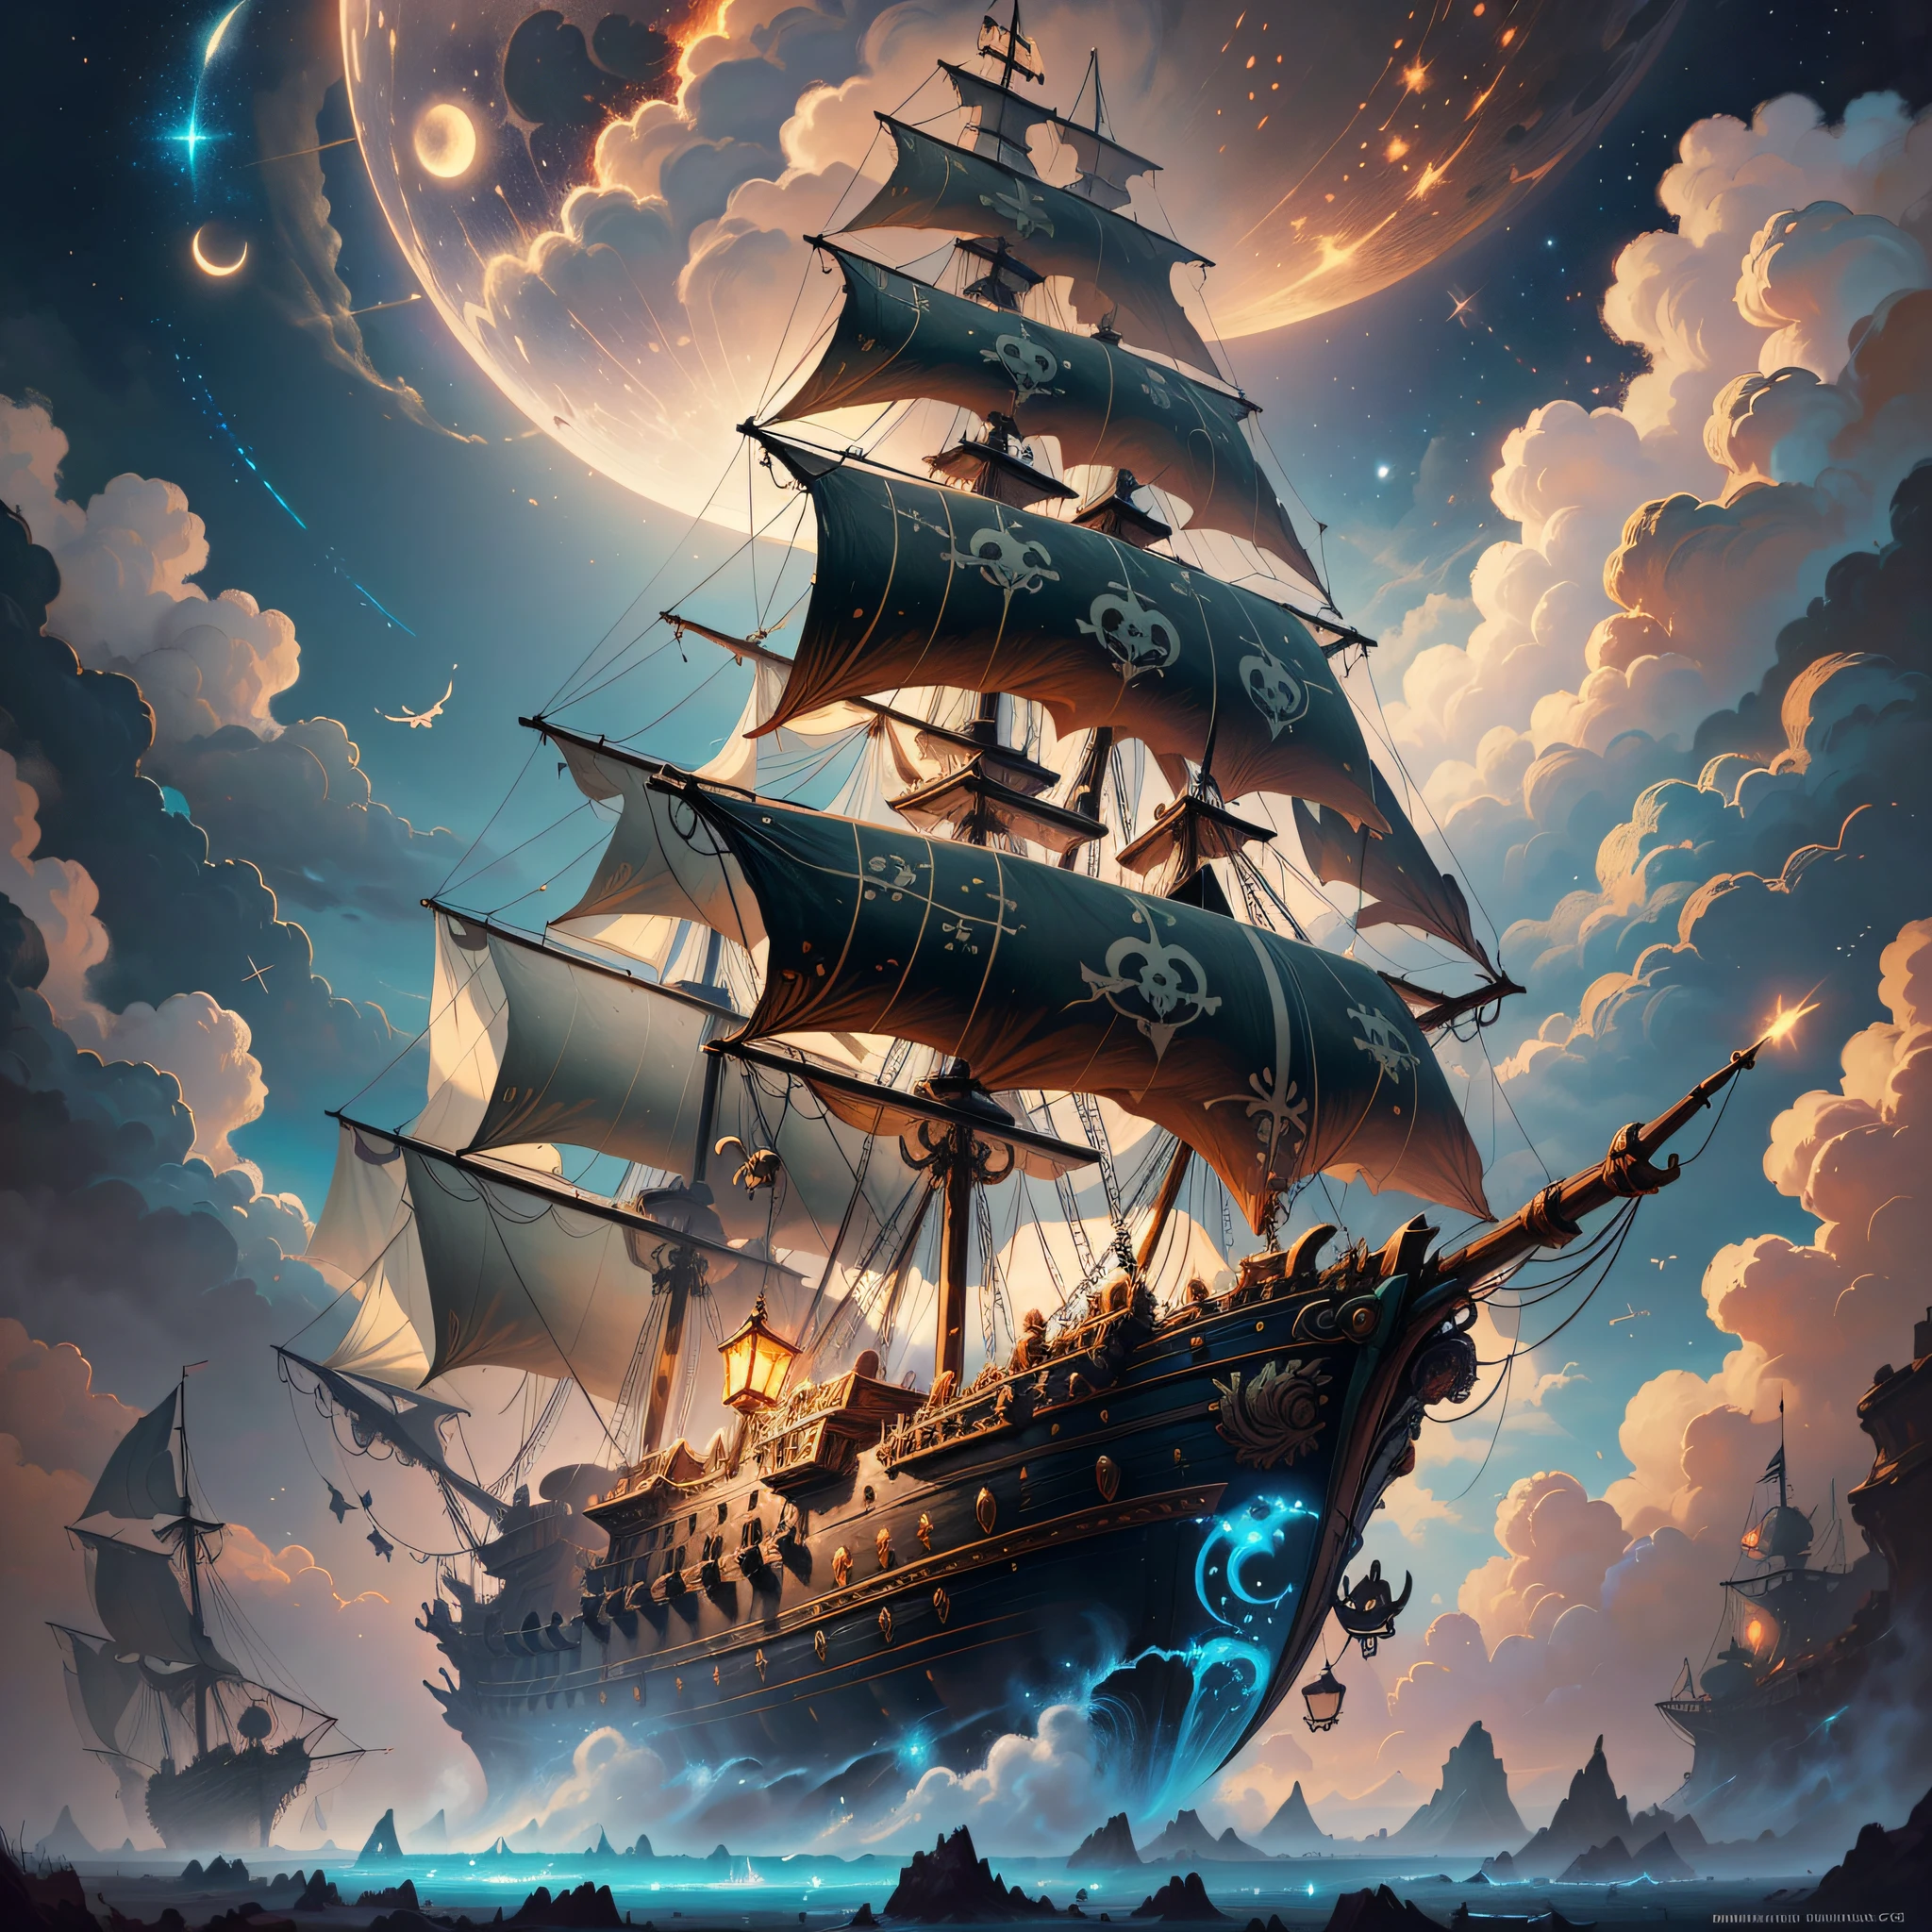 小さな妖精に囲まれた空飛ぶ海賊船の絵, 雲, 月, 背景の星, ファンタジー, 4Kで非常に精細なデジタルアート, 8Kの高品質で詳細なアート, シリル・ロランド風, detailed ファンタジー digital art, epic ファンタジー science fiction illustration, 素晴らしい壁紙, ガストン・ビュシエールに触発された --auto --s2